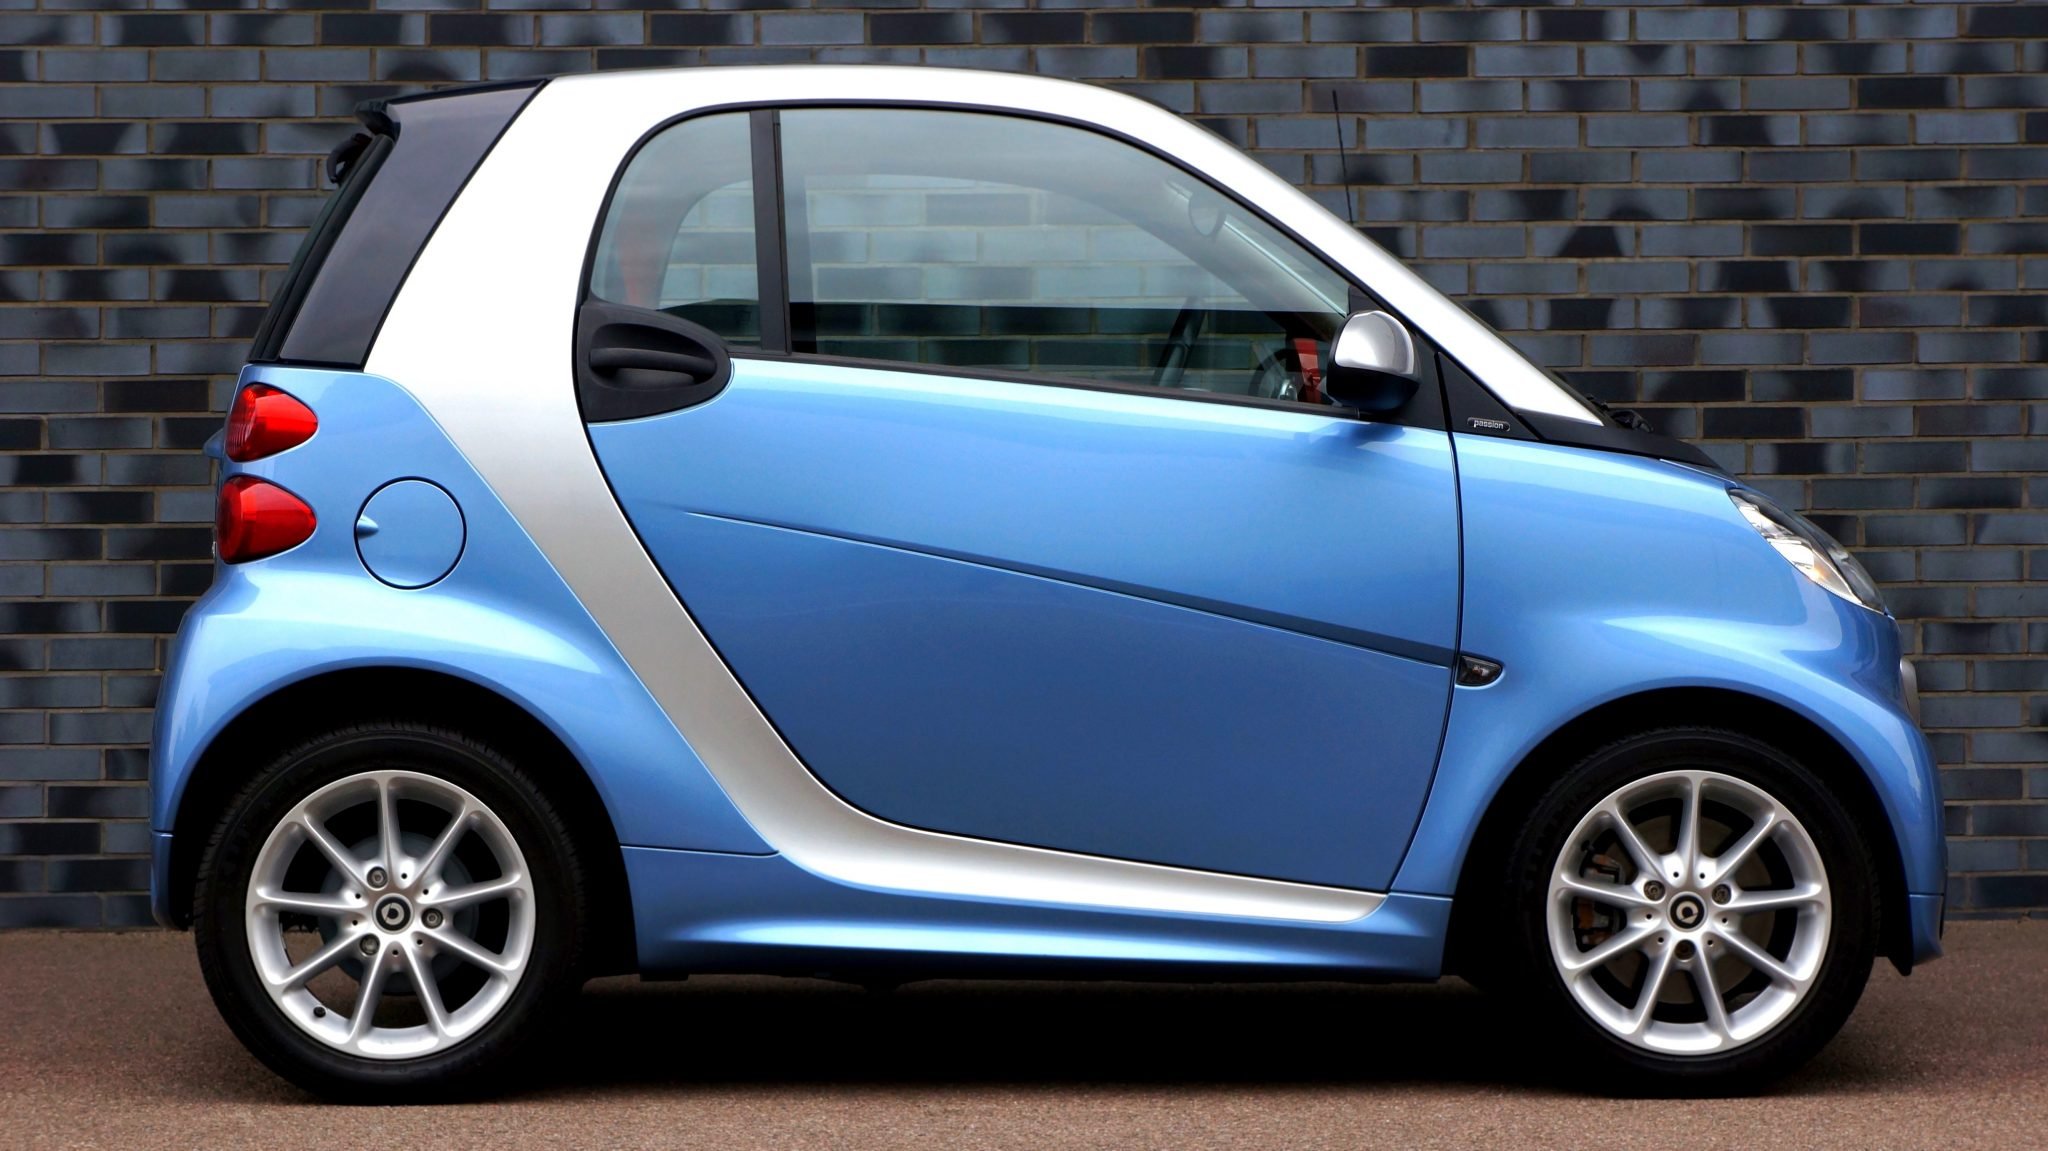 Мини-кар Smart Fortwo 2. BMW смарт 2х дверная малолитражка. Smart Fortwo голубой. БМВ смарт 4 дверная.